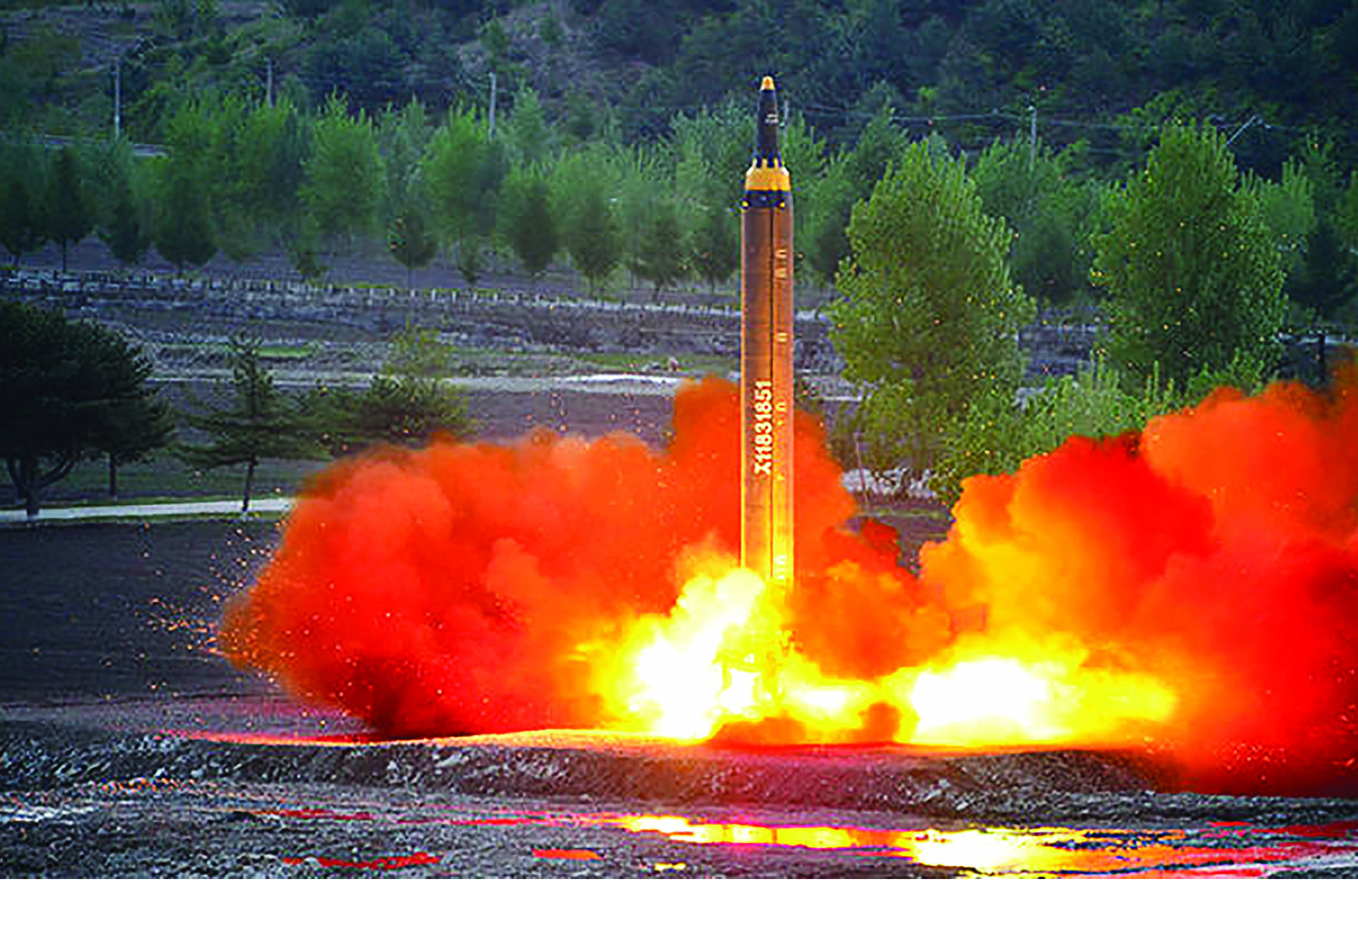 Японские военные оценилимощность ядерного зарядаКНДР в 120 килотонн